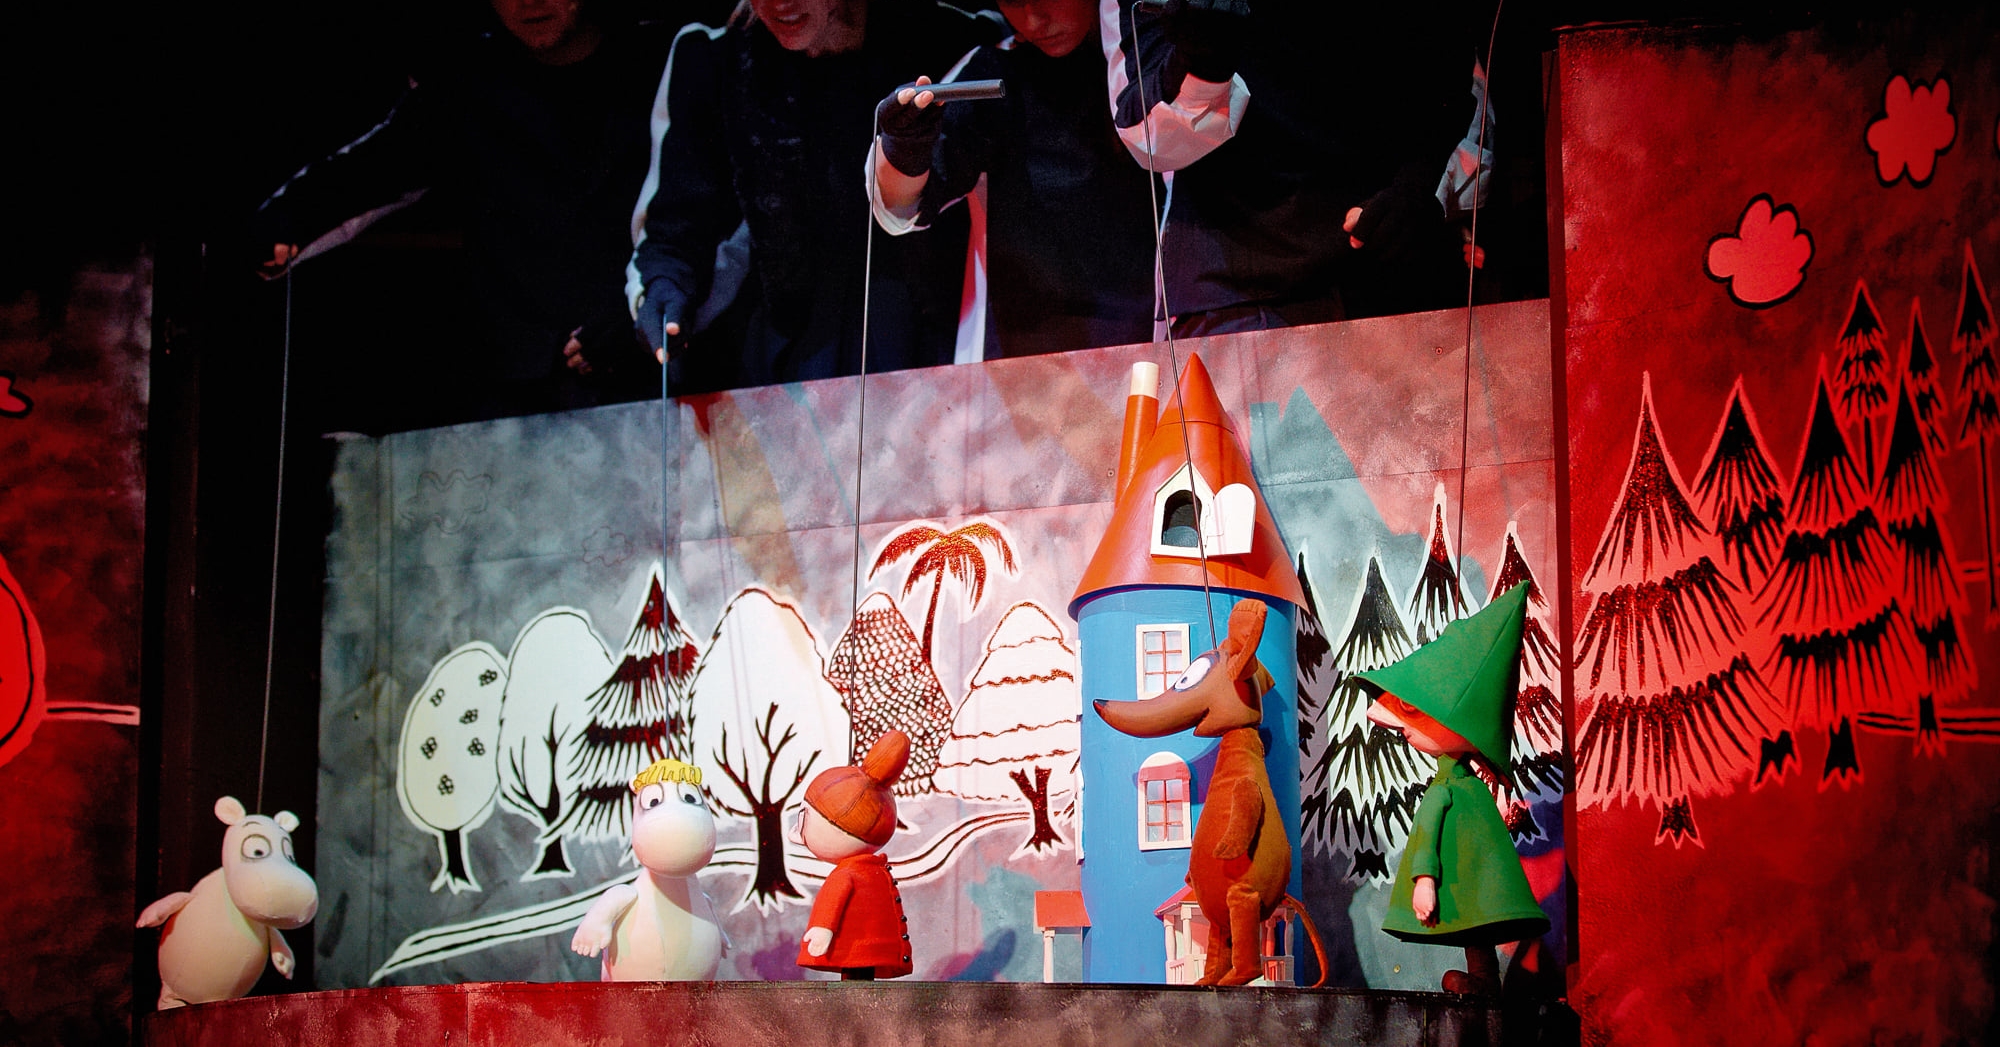 Ляльковий театр ім. Г. К. Андерсена в Любліні запрошує на спектаклі та майстер-класи